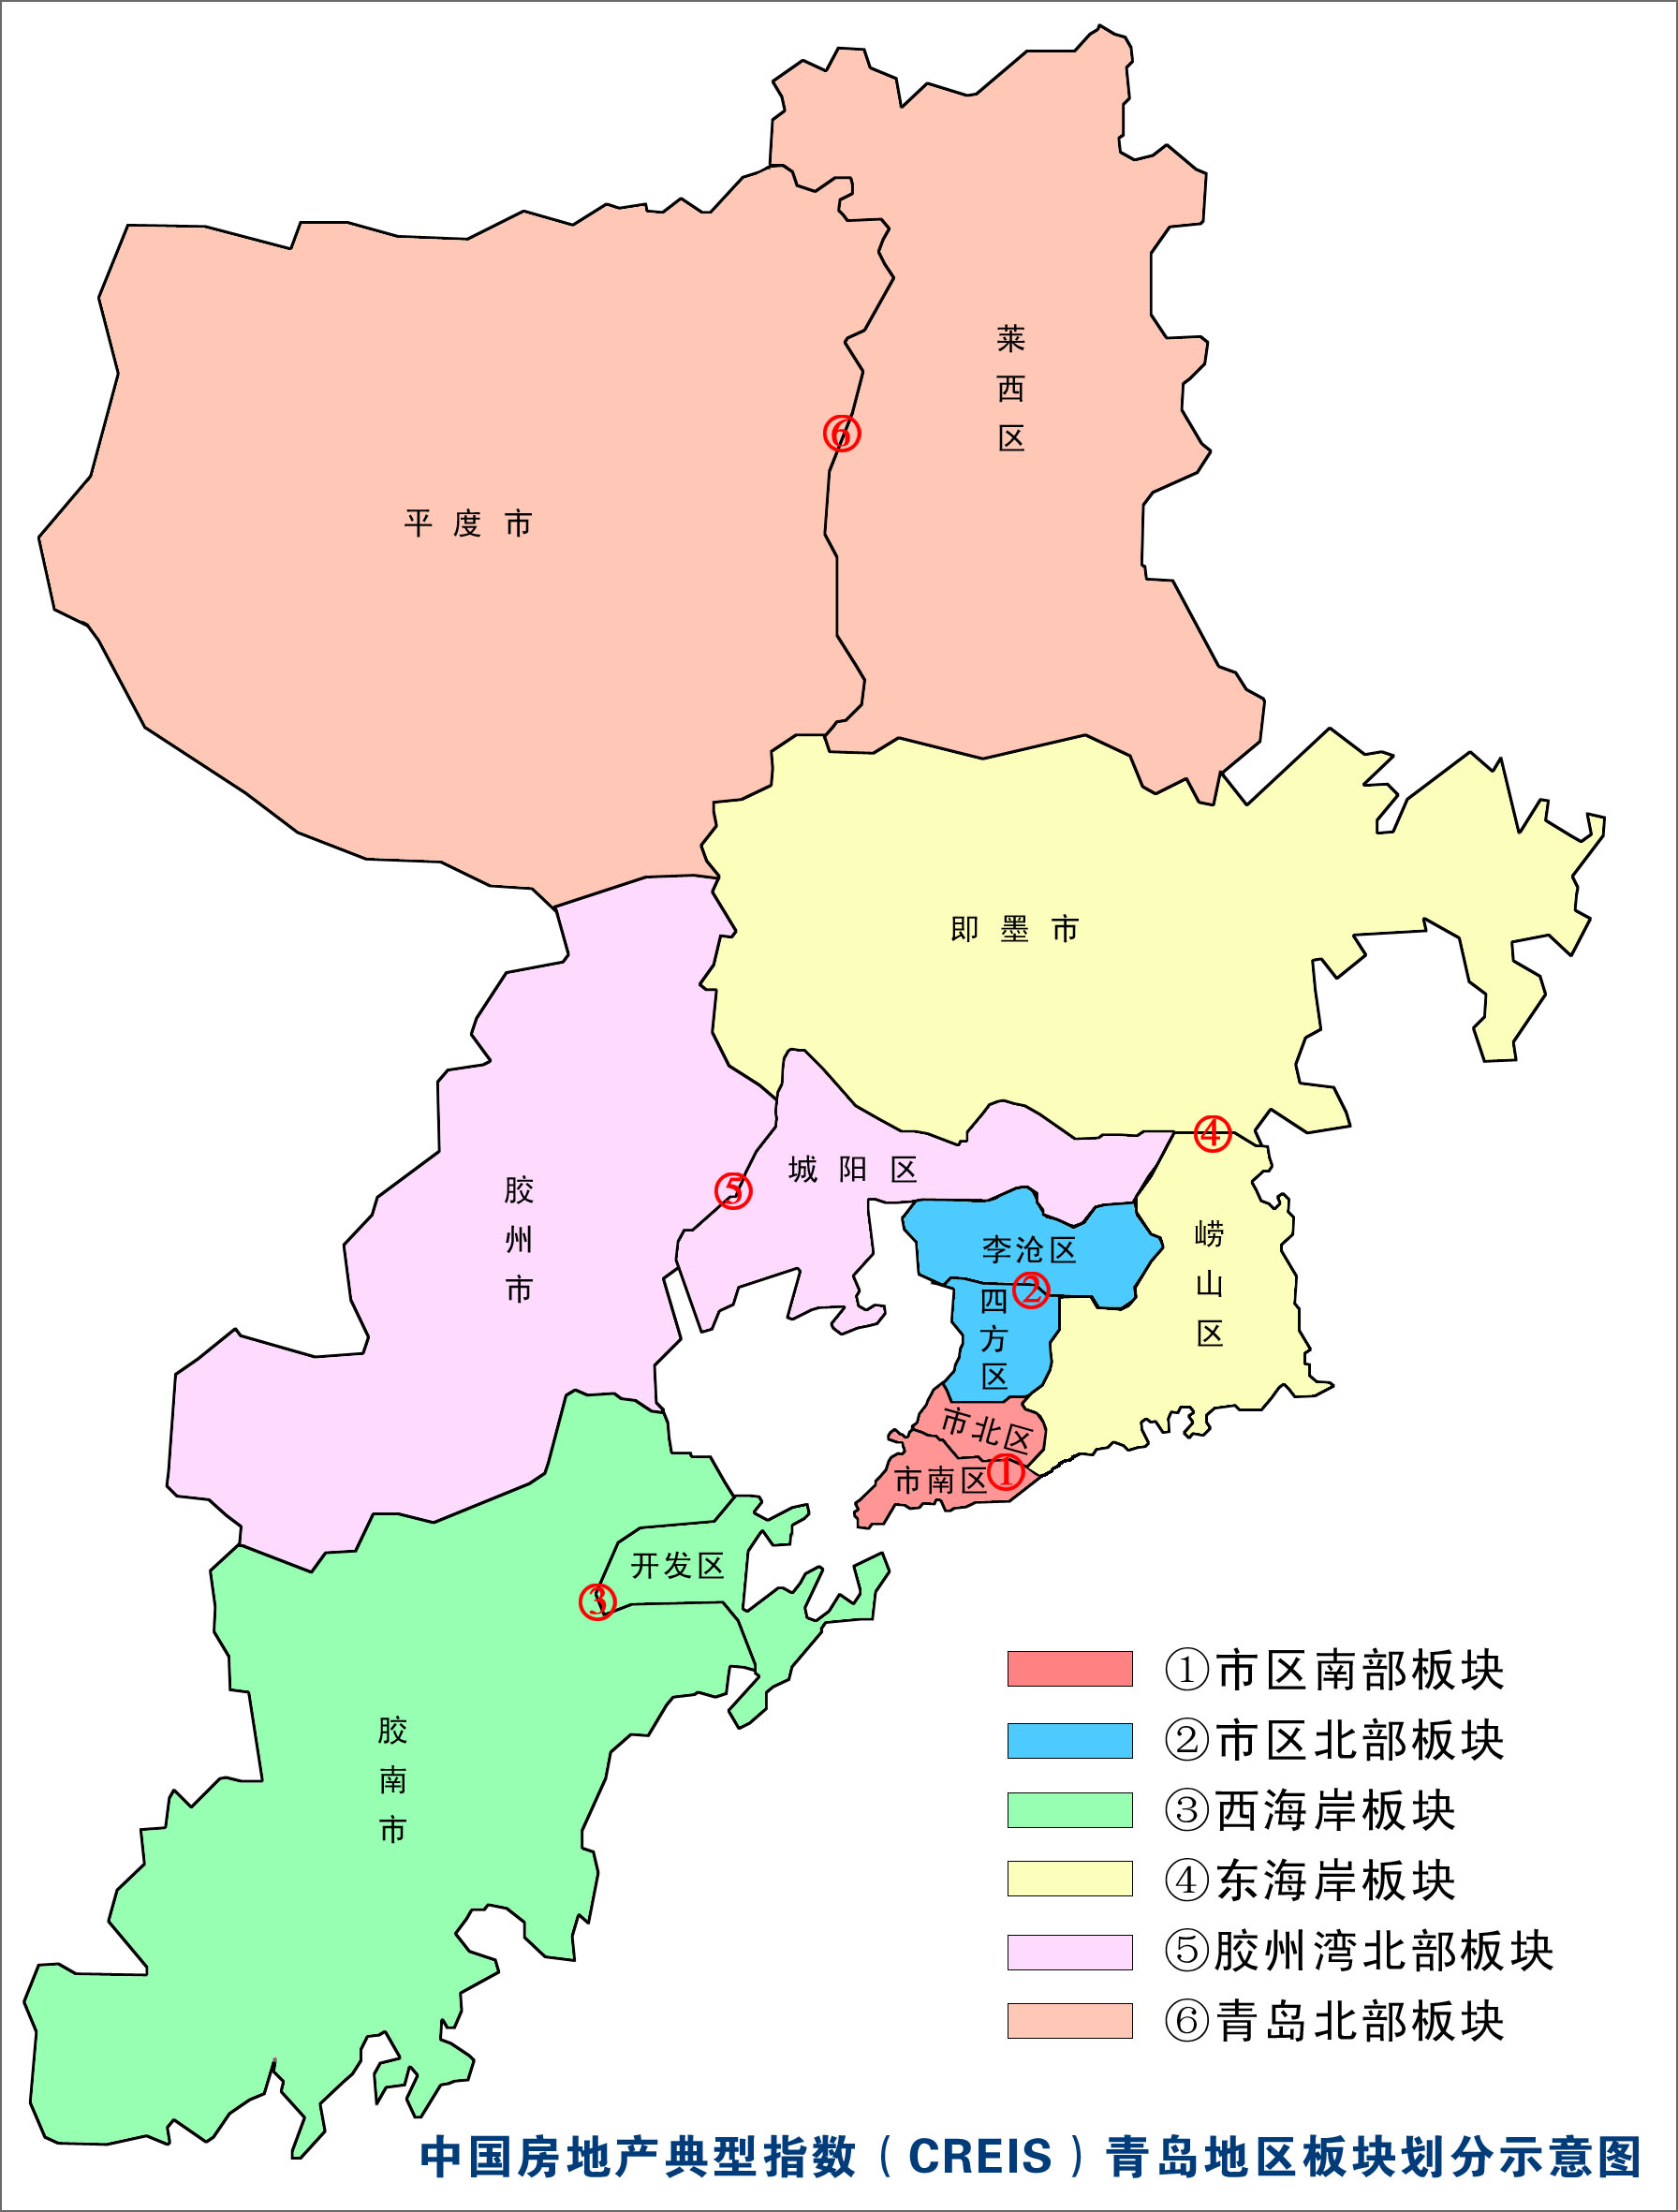 三,青岛典型住宅指数分析 市区南部地产板块 综合指数